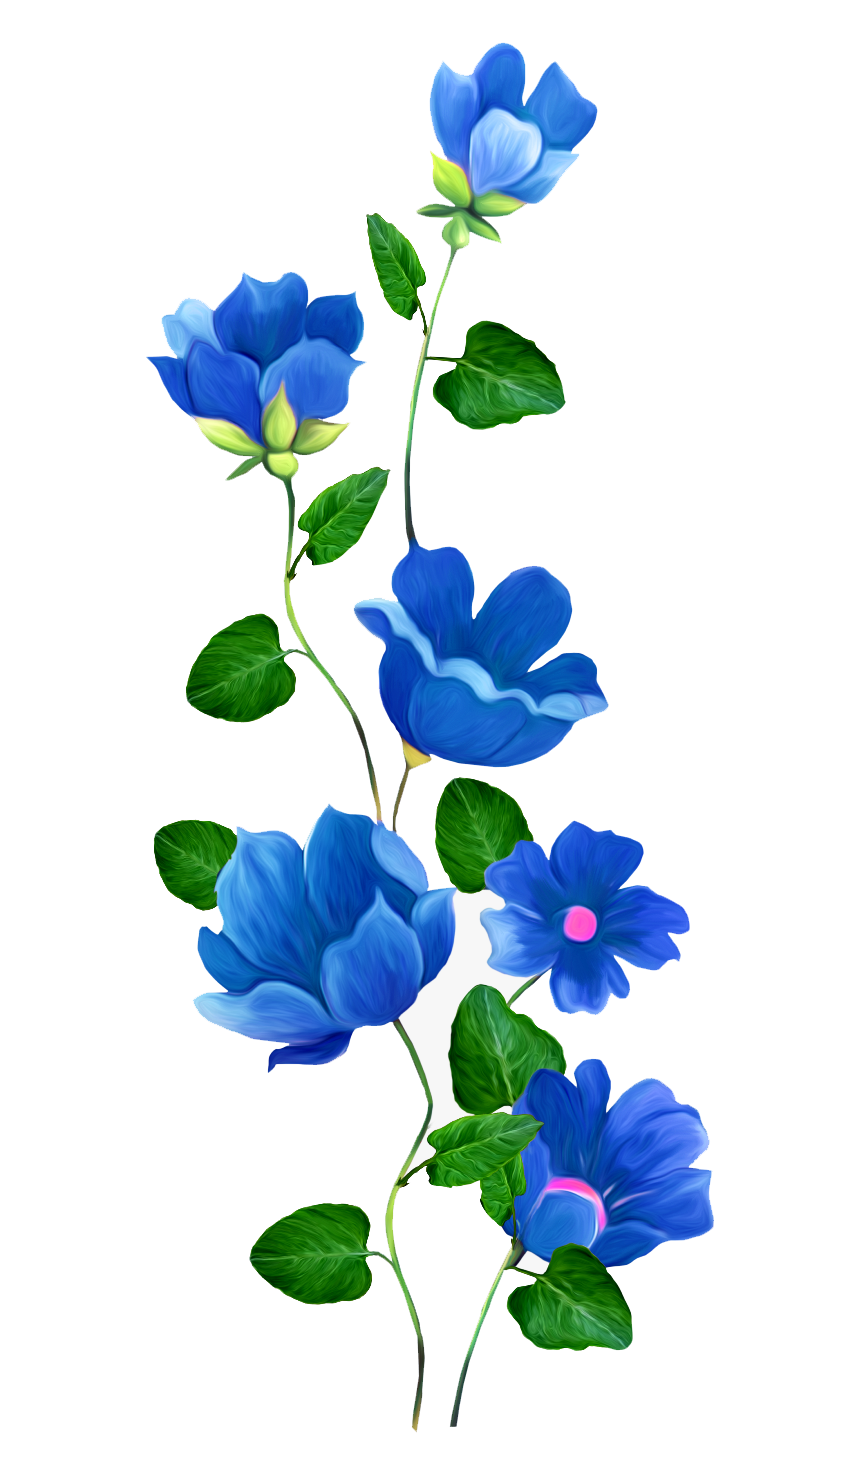 37-375700_flower-rose-blue-pin-clip-art-blue-flower